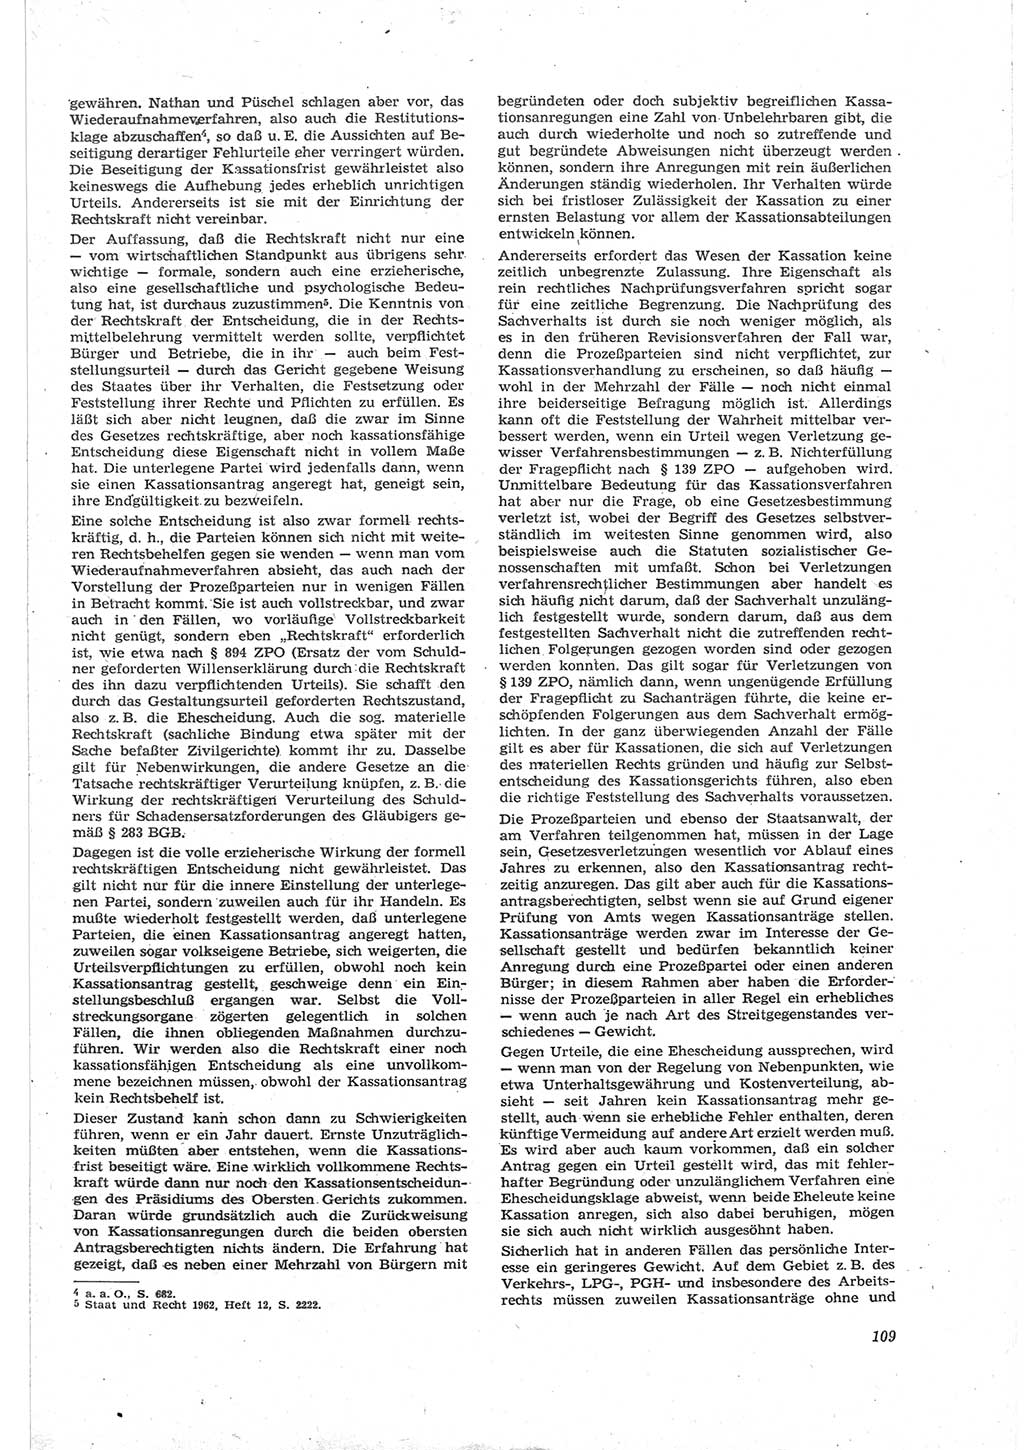 Neue Justiz (NJ), Zeitschrift für Recht und Rechtswissenschaft [Deutsche Demokratische Republik (DDR)], 18. Jahrgang 1964, Seite 109 (NJ DDR 1964, S. 109)